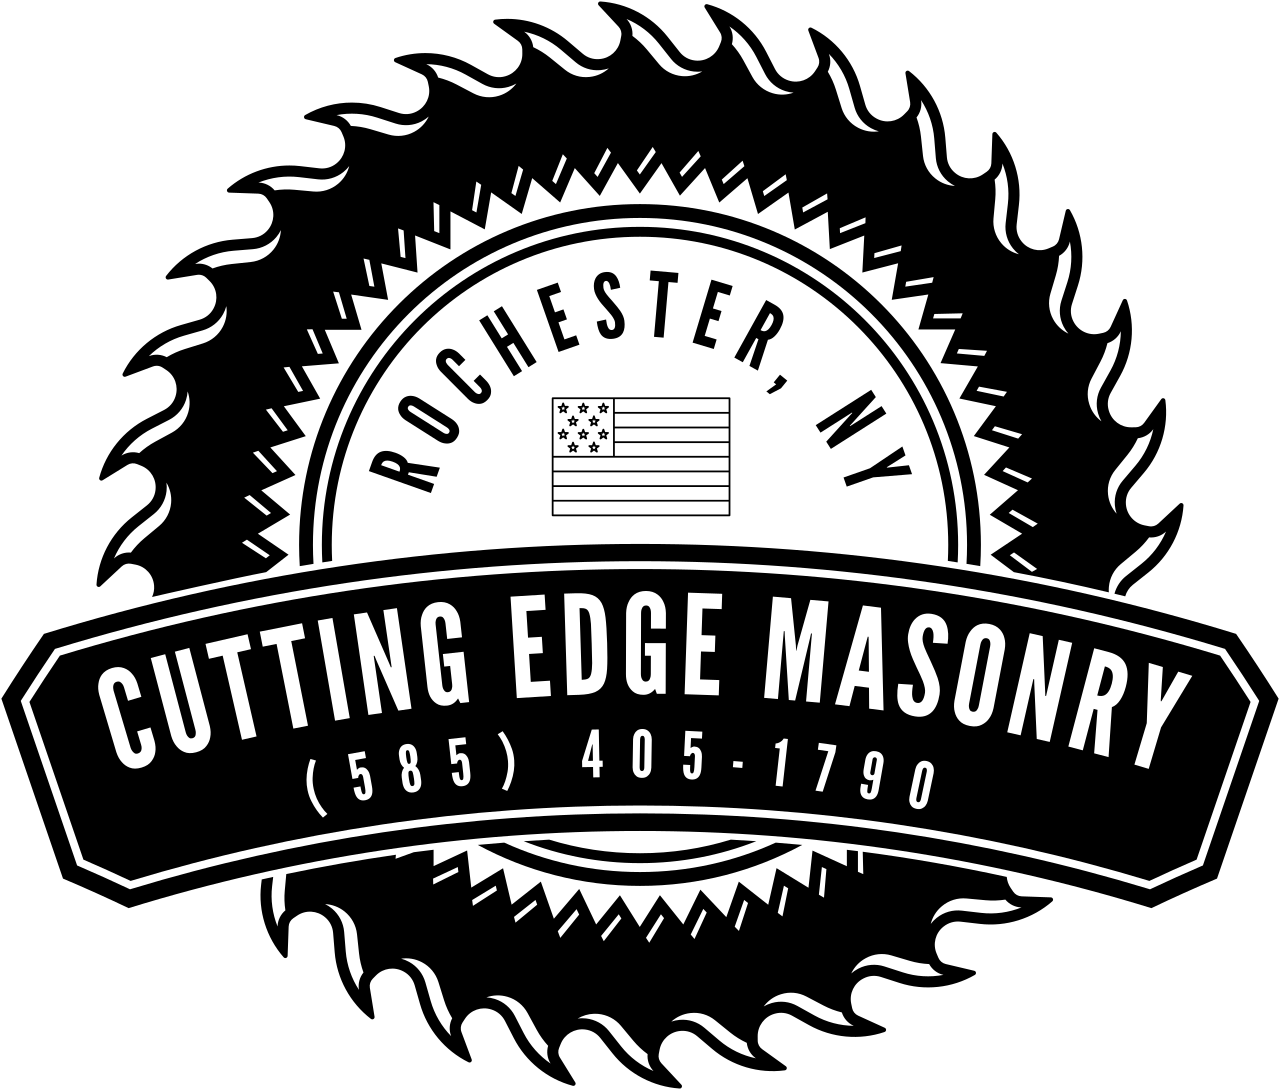 CUTTING EDGE MASONRY's web page